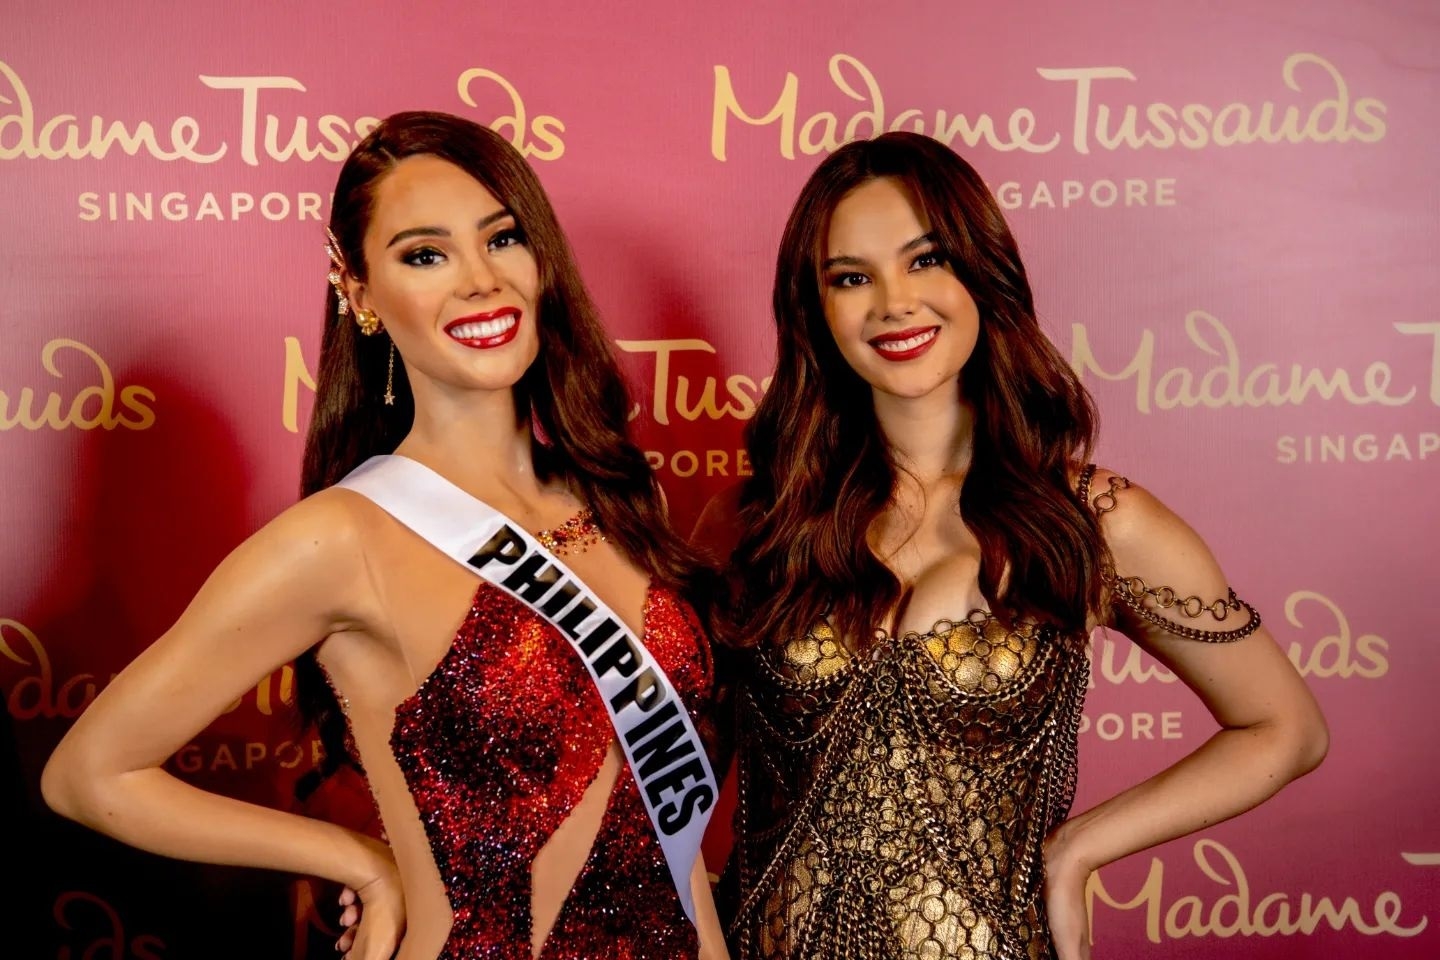 Ra mắt tượng sáp Miss Universe 2018 Catriona Gray tại Bảo tàng Madame Tussauds Singapore